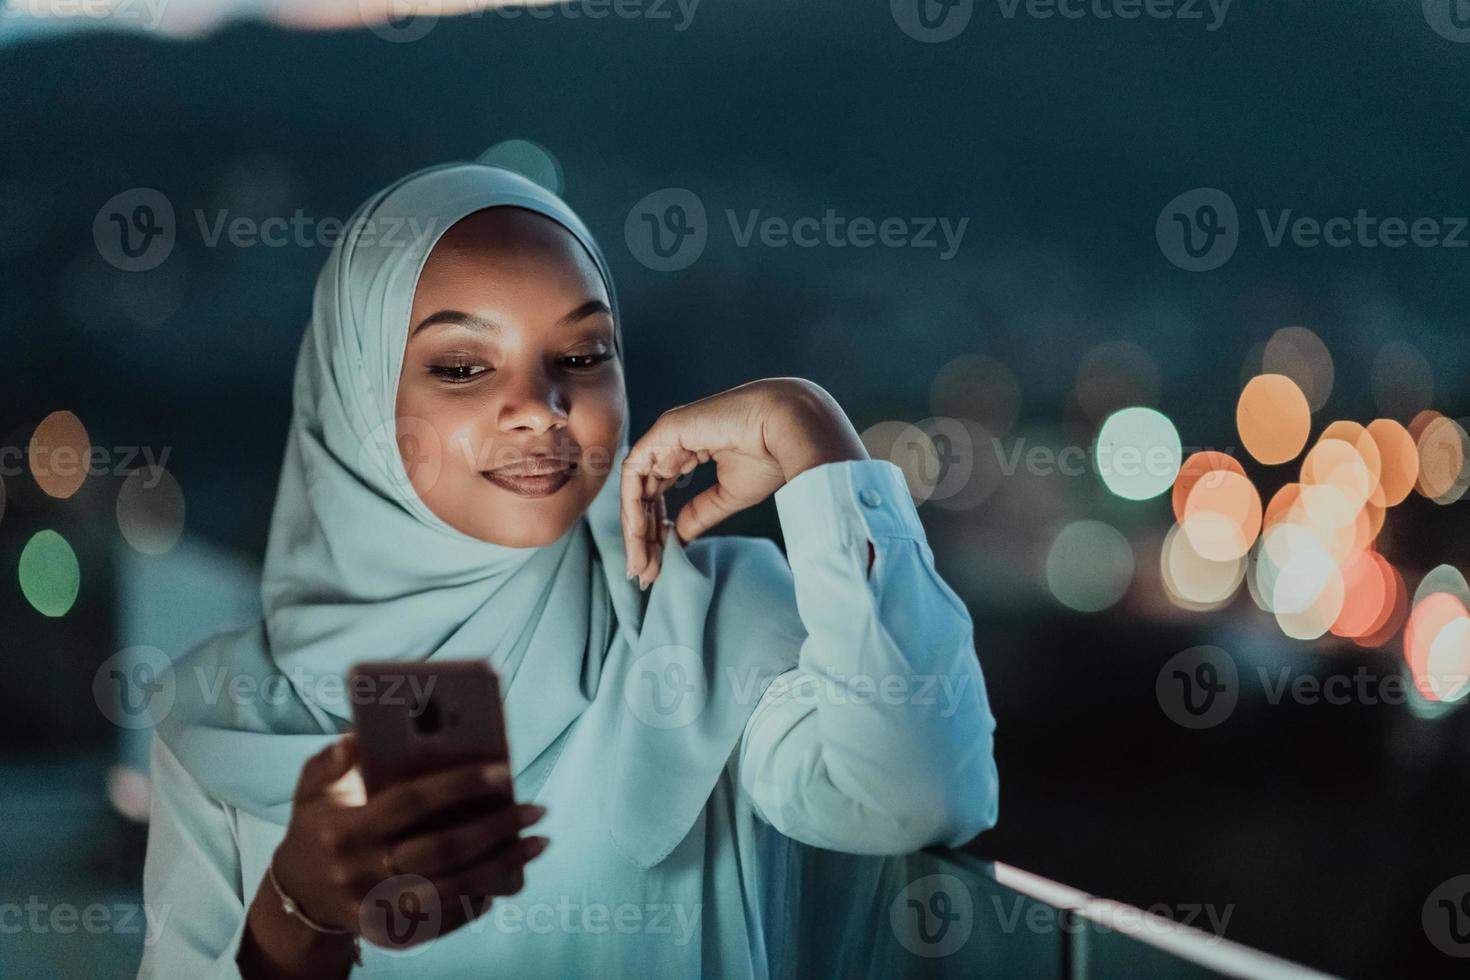 jeune femme musulmane portant un voile d'écharpe dans la rue de la ville urbaine la nuit envoyant des SMS sur un smartphone avec la lumière de la ville bokeh en arrière-plan. photo